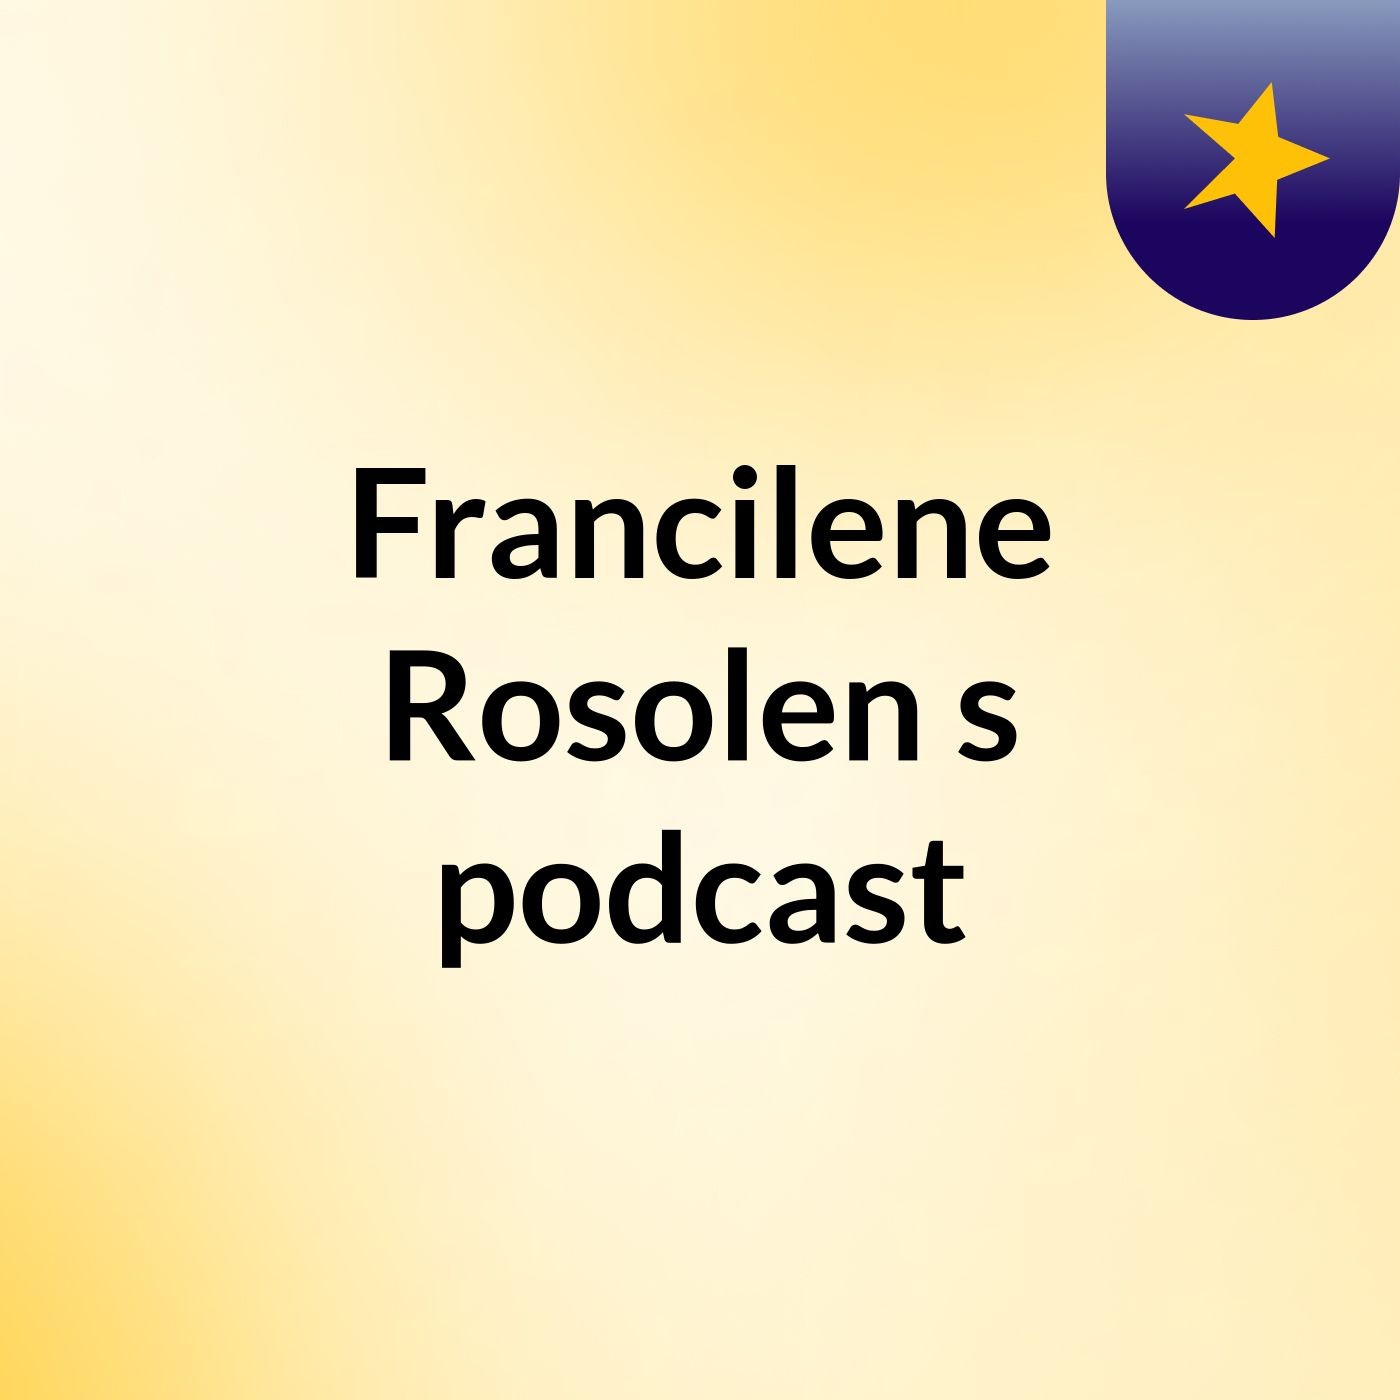 Francilene Rosolen's podcast